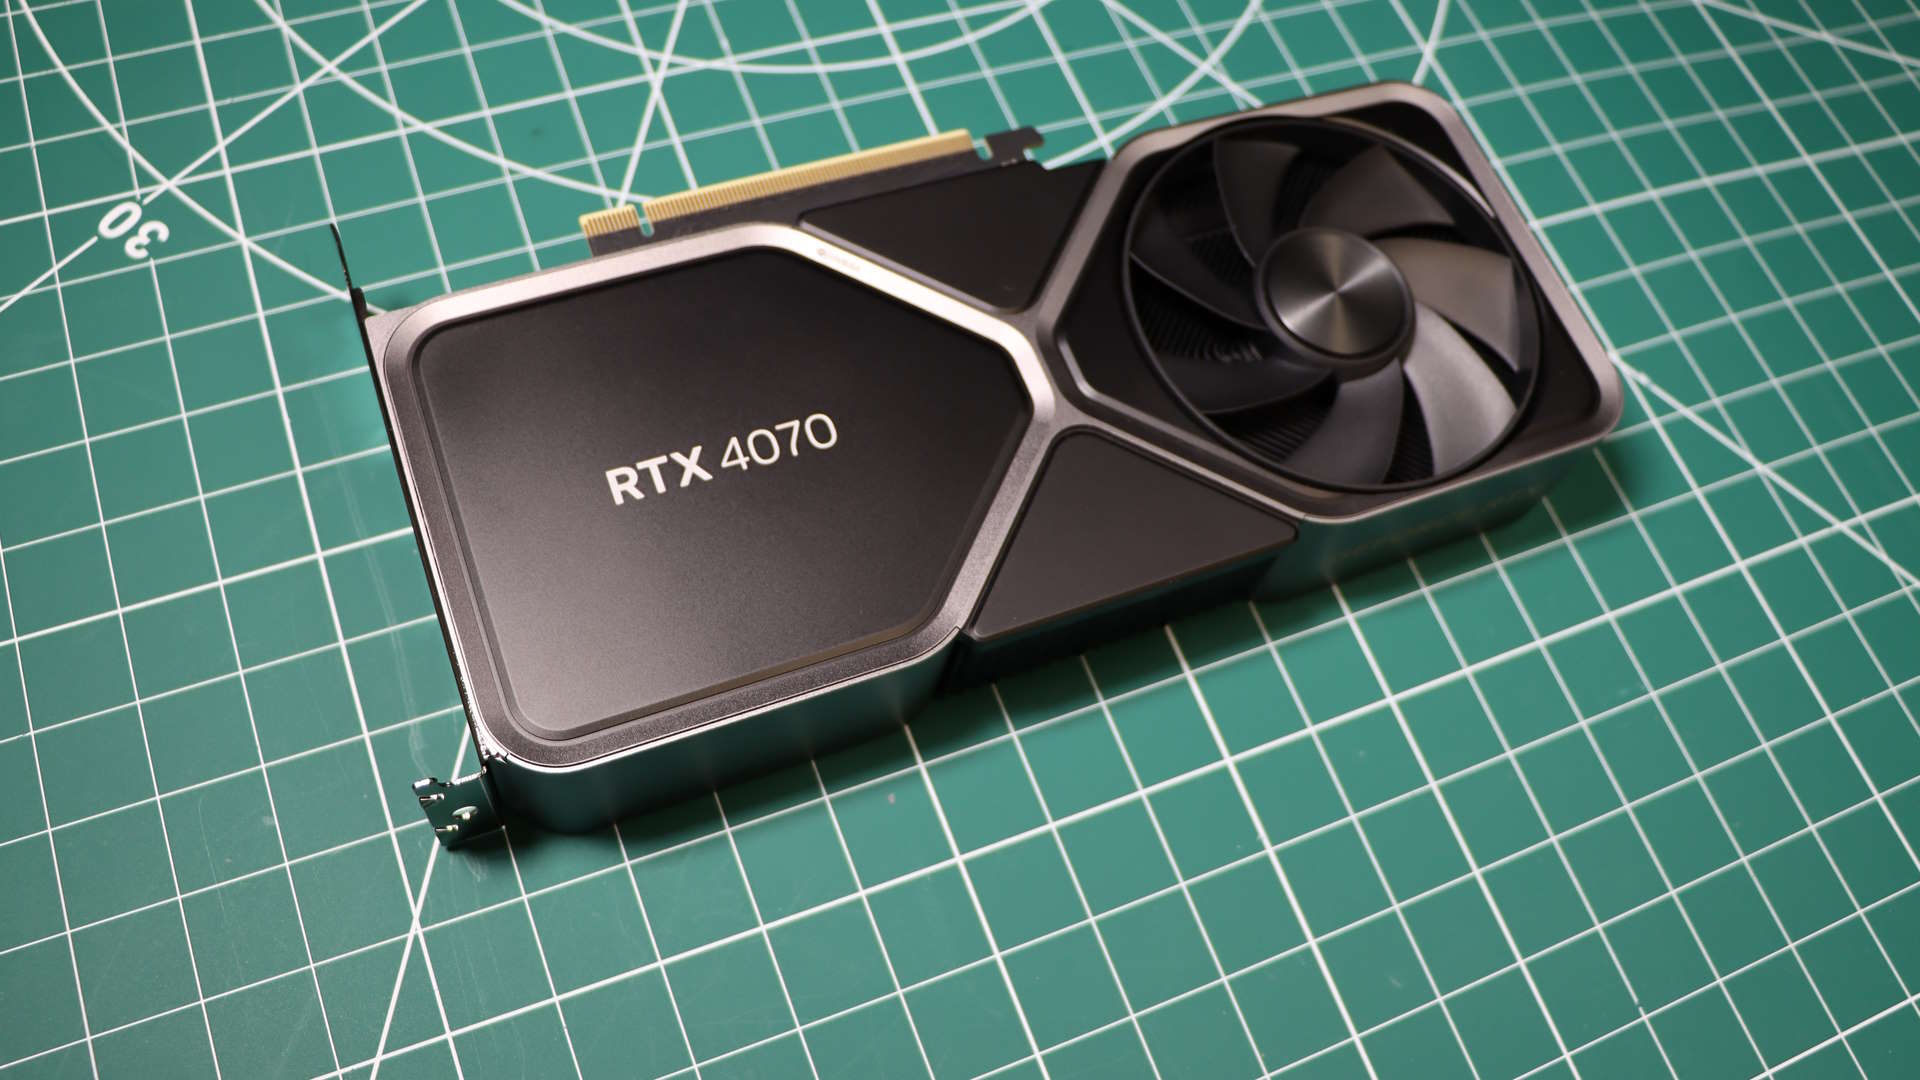  New Nvidia RTX 4070 variant based on larger GPU rumoured 